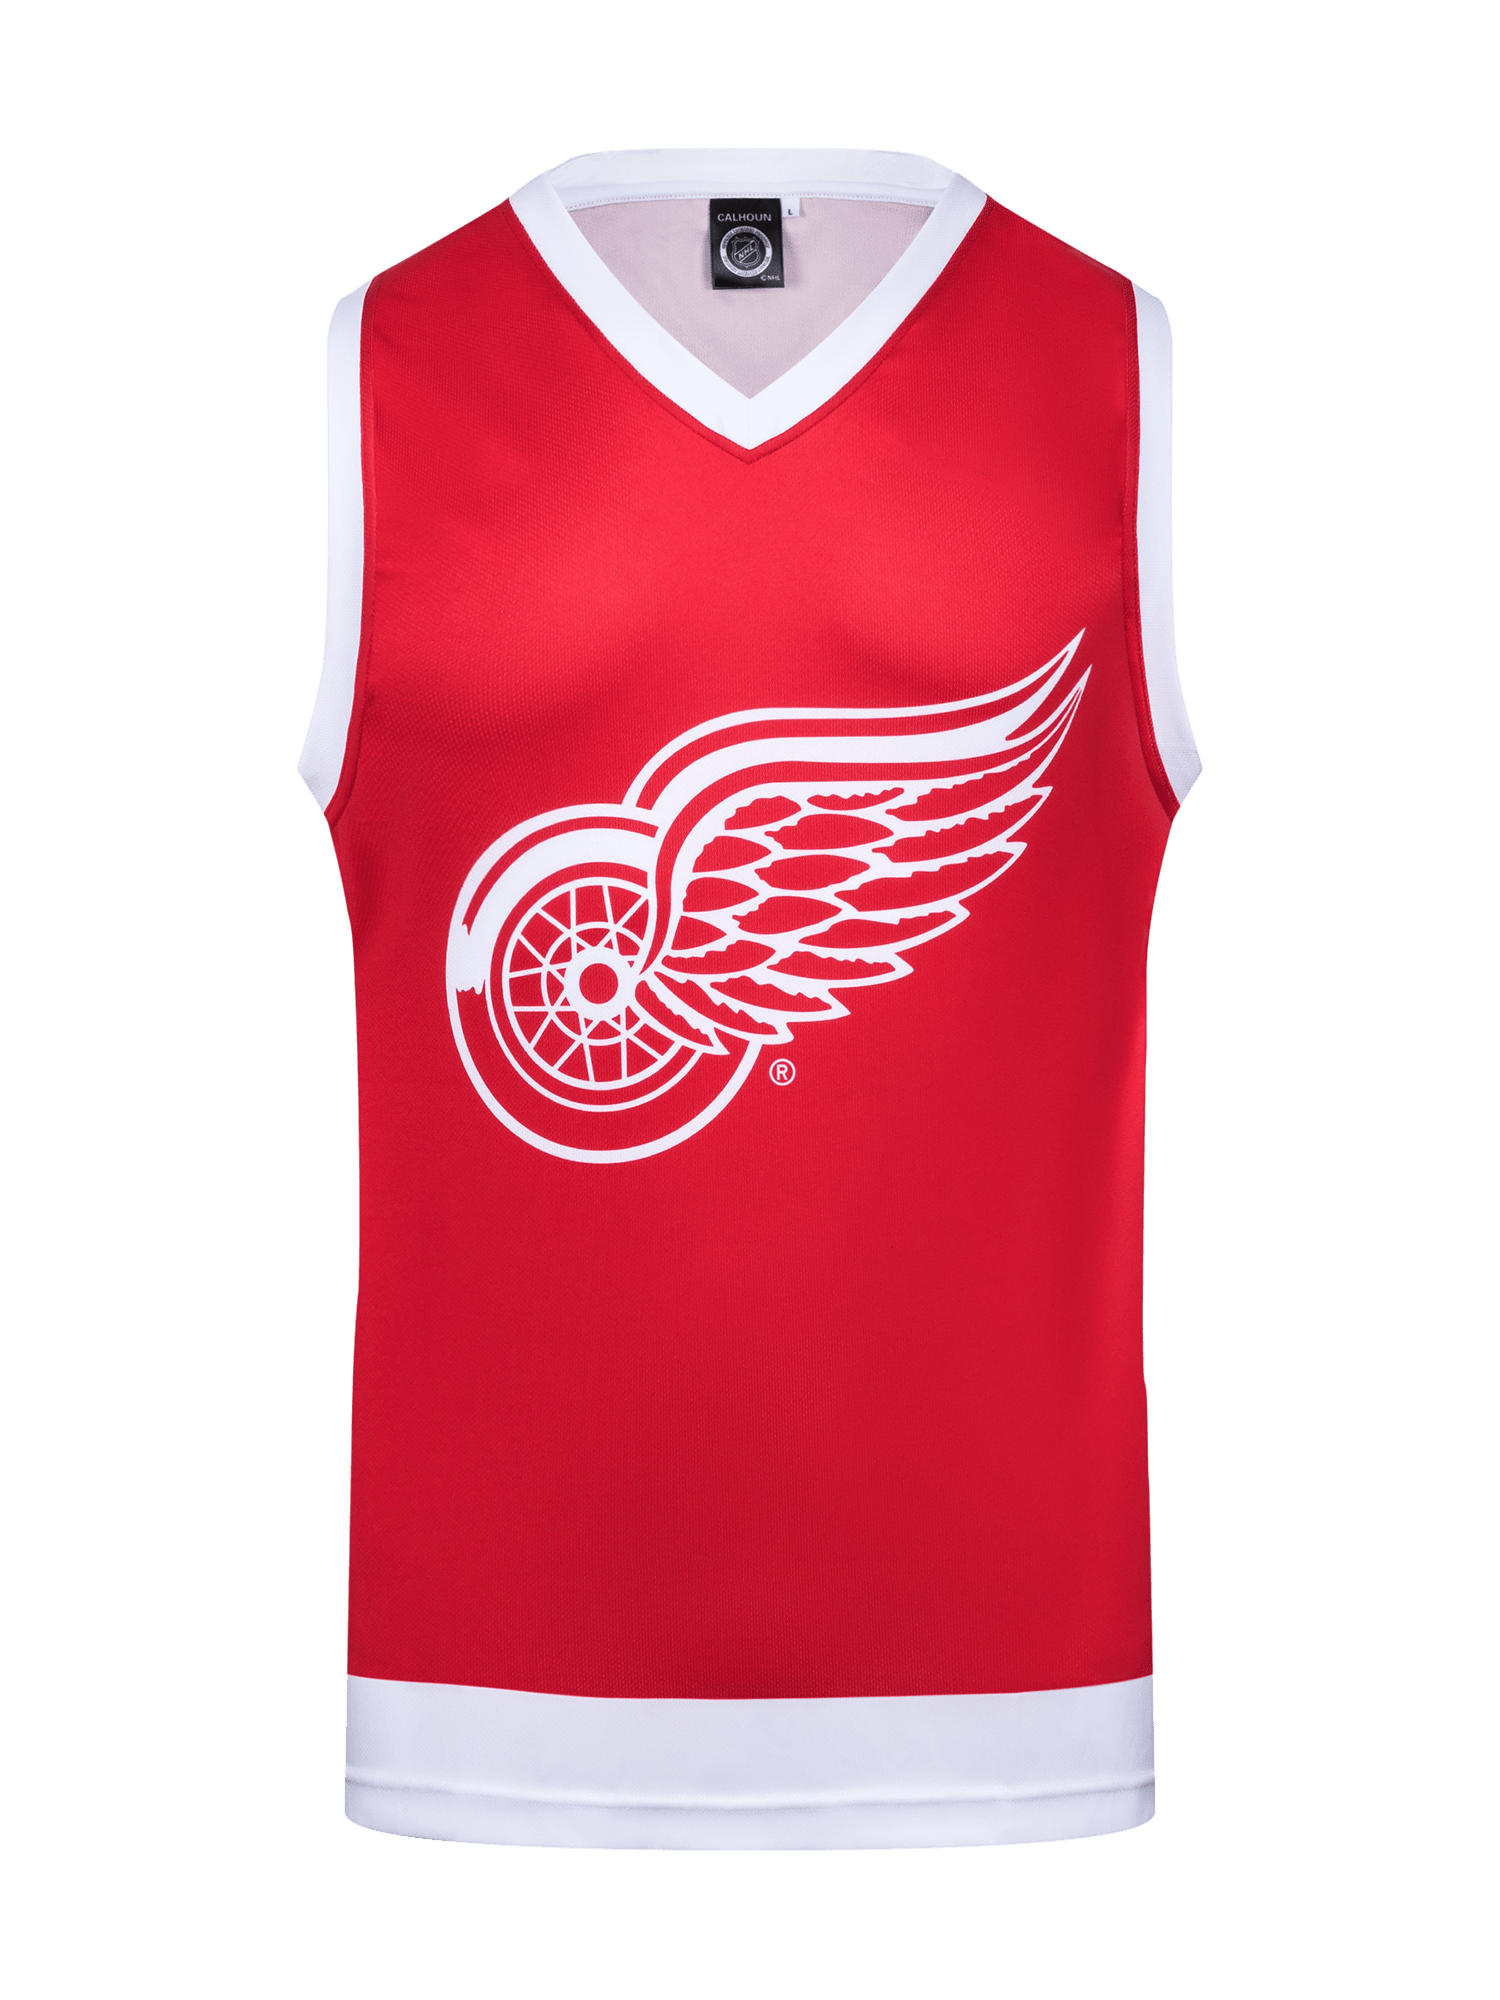 Hockey Jersey Detroit Red Wings | 3D model